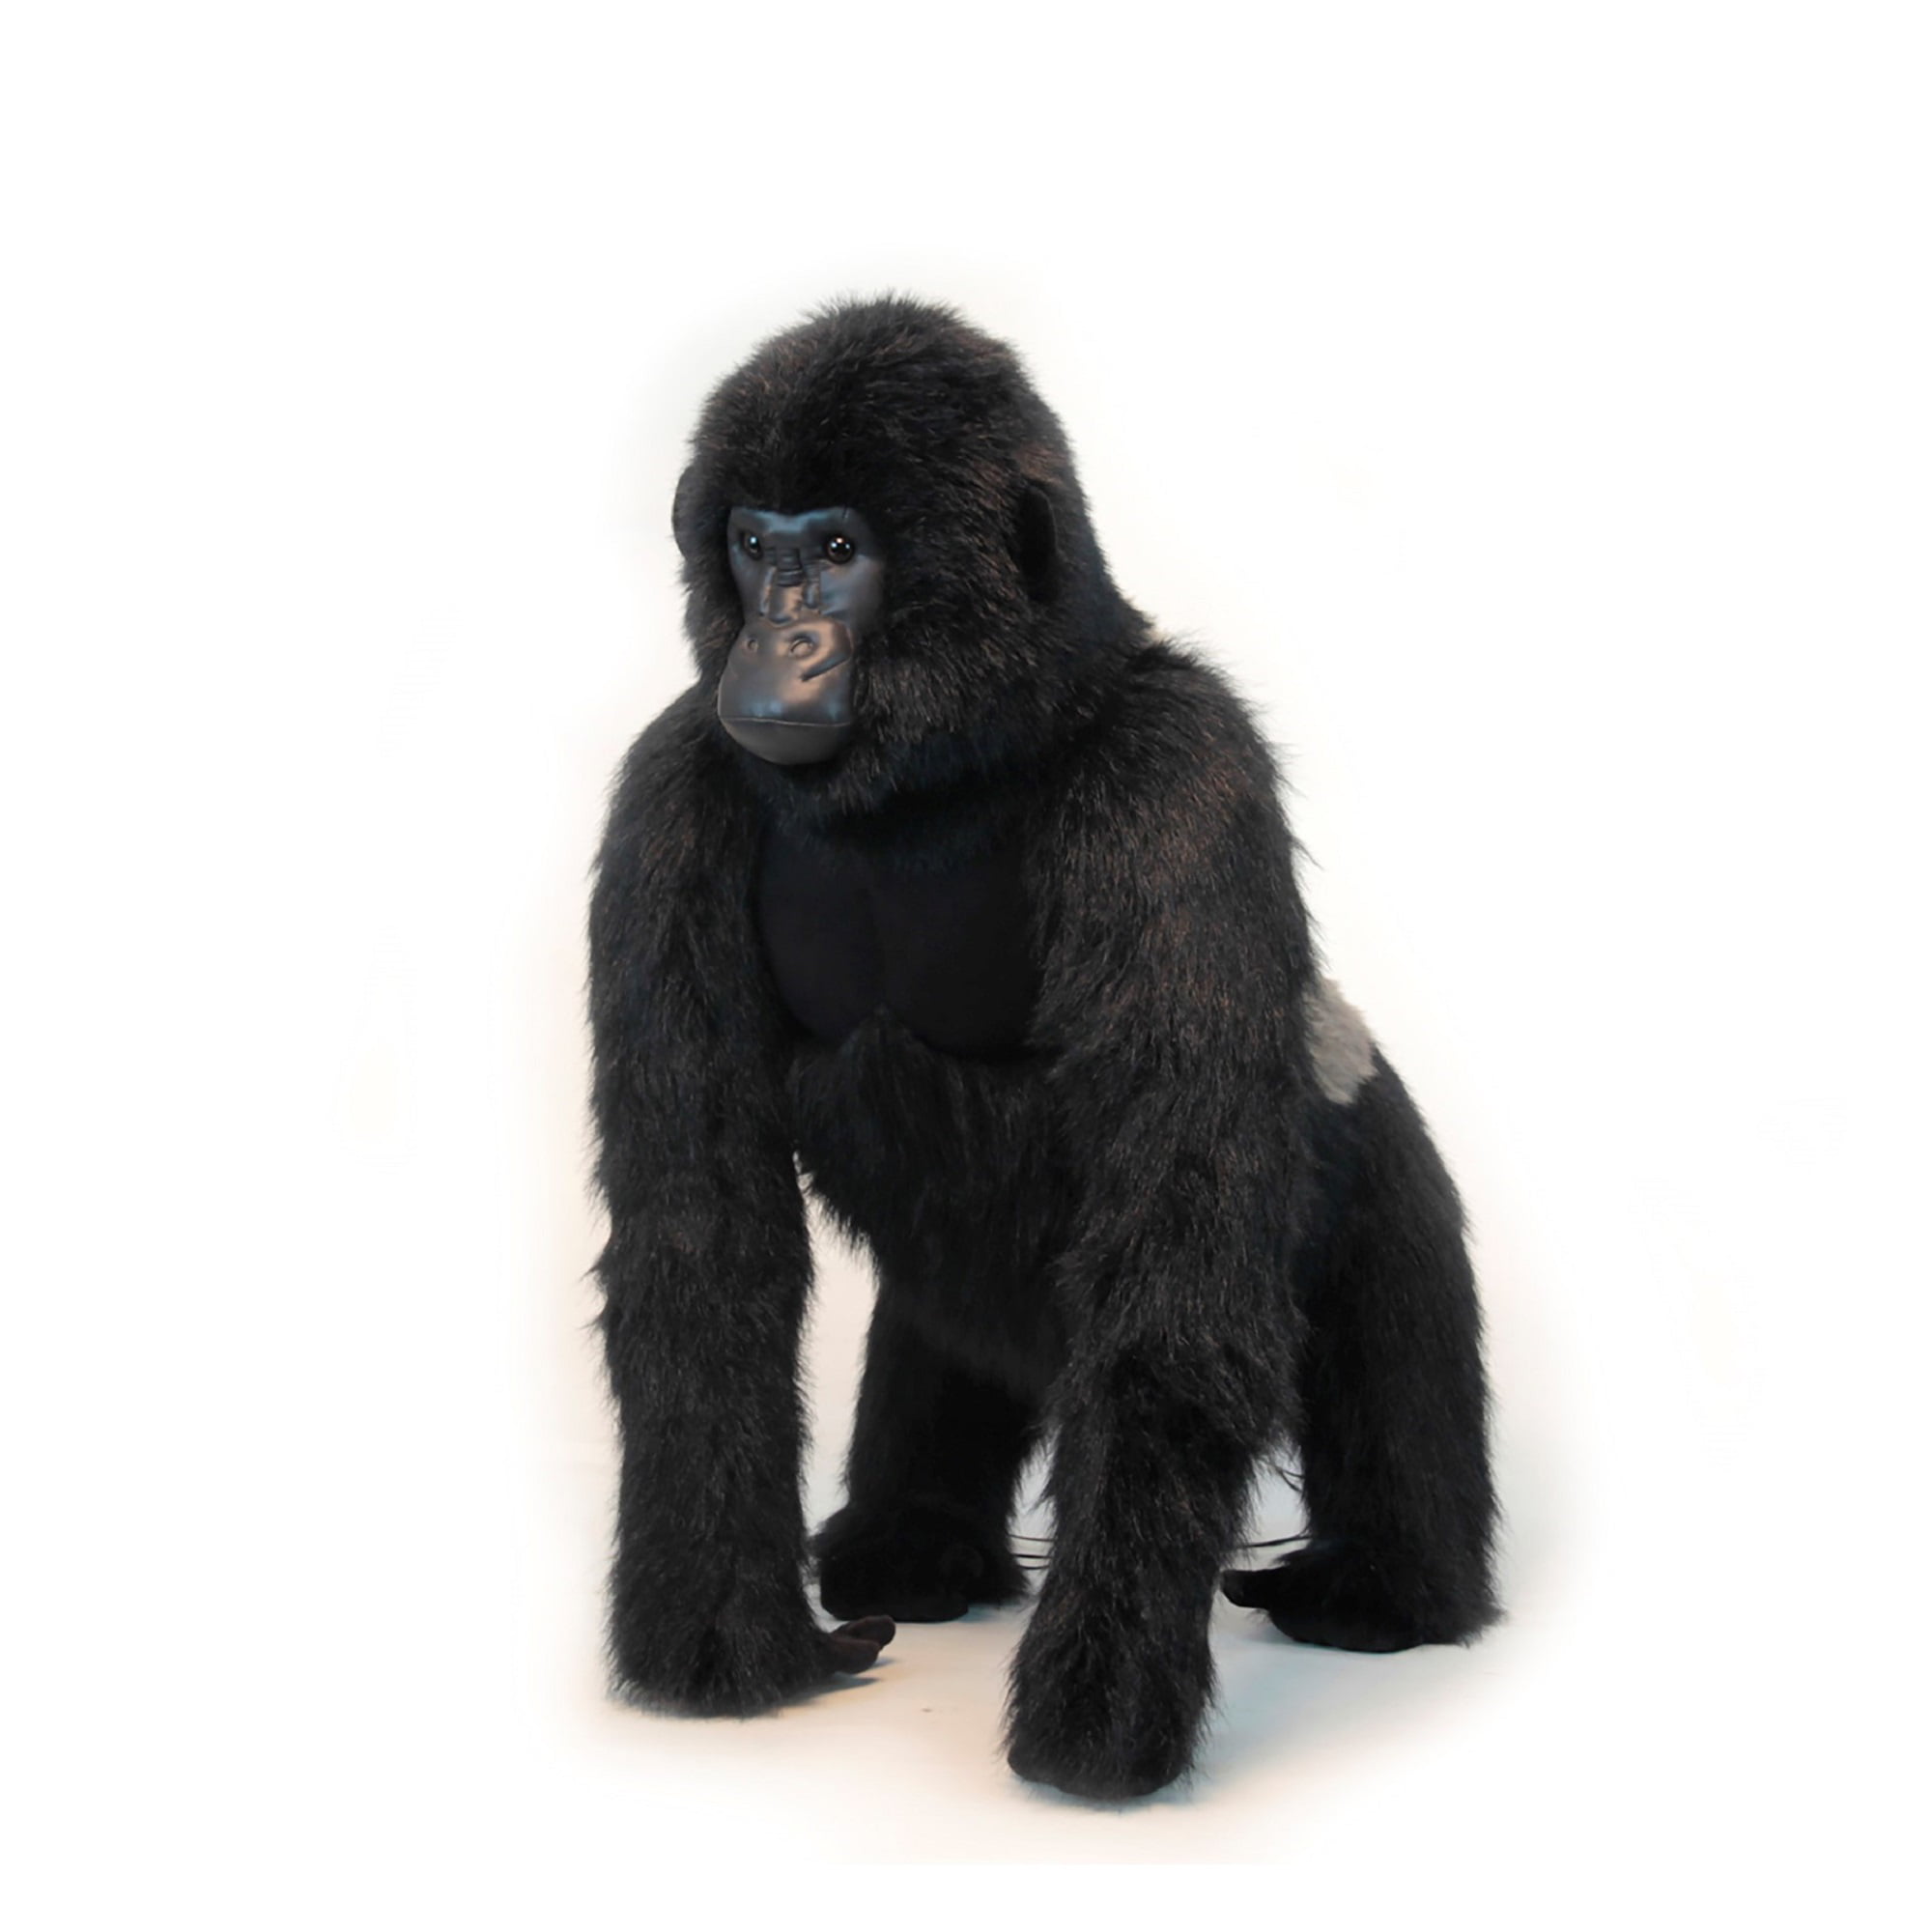 Сколько стоит горилла. Гигантская горилла игрушка. Игрушка горилла из 90-х. Стоячая горилла. Мягкая игрушка горилла 45 см.